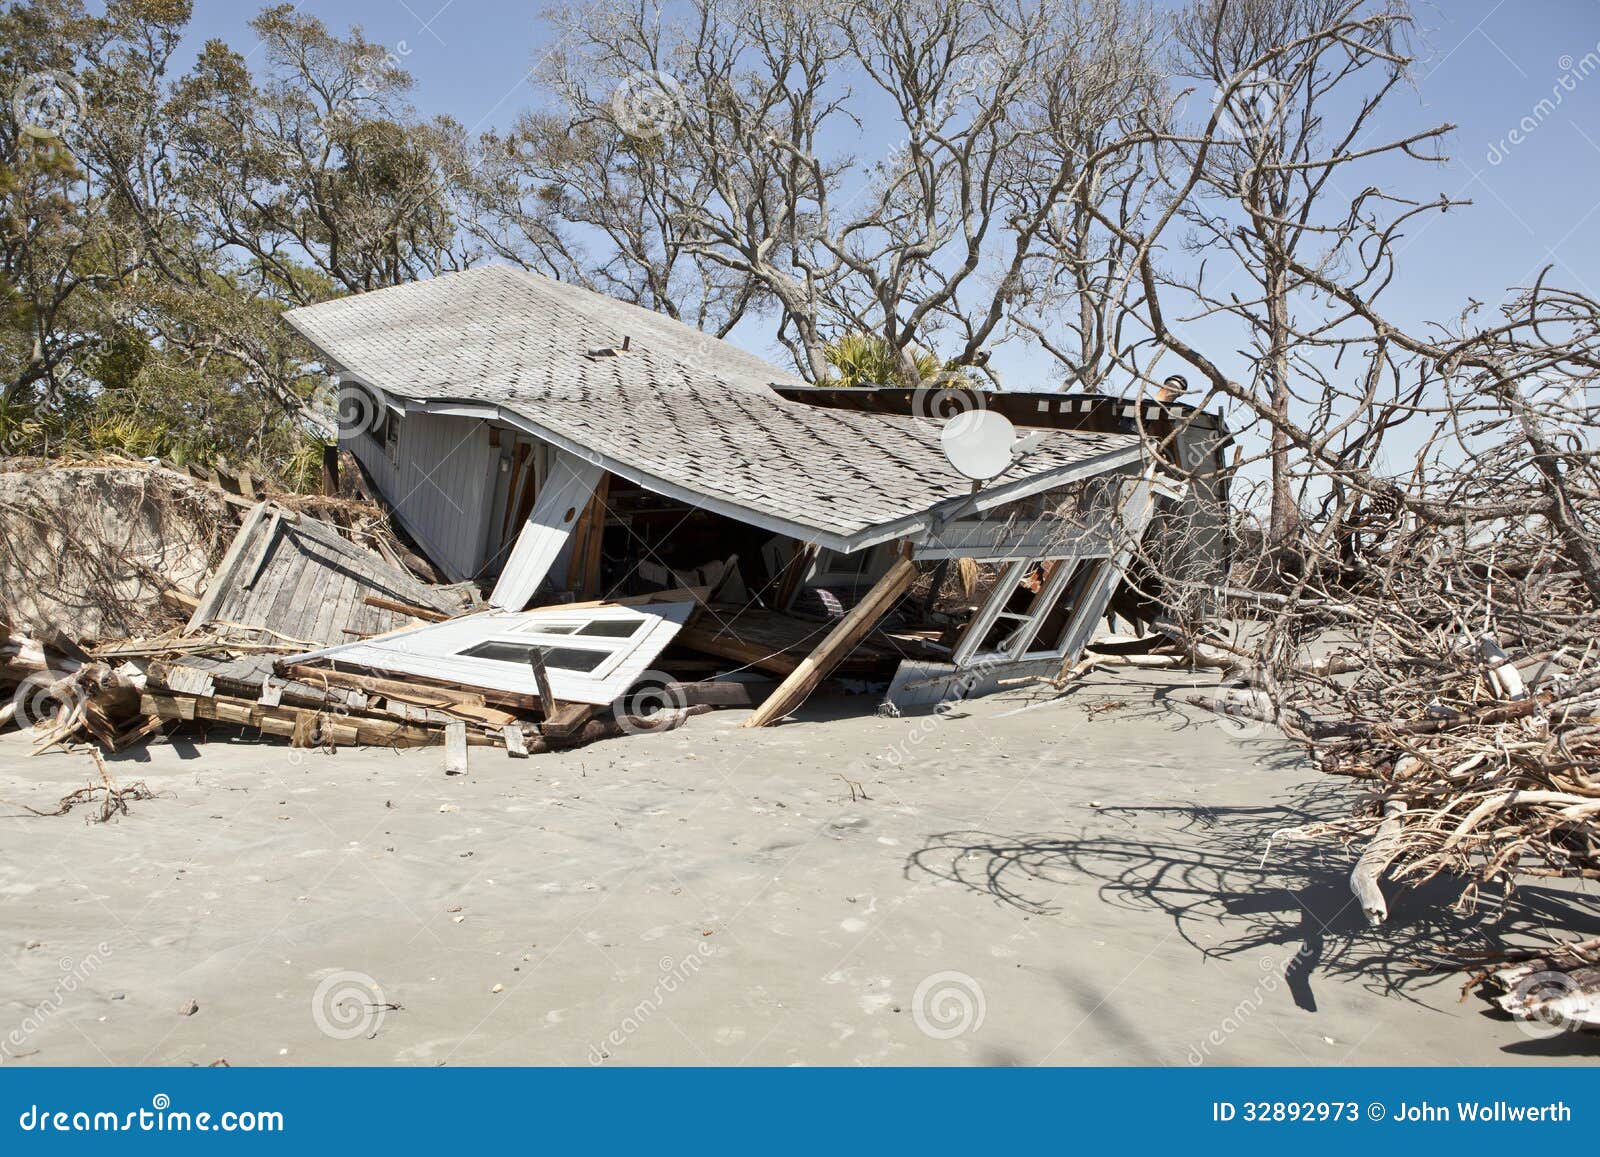 NoticiaW - Venezuela crisis economica - Página 20 Casa-destruida-por-la-inundaci%C3%B3n-32892973